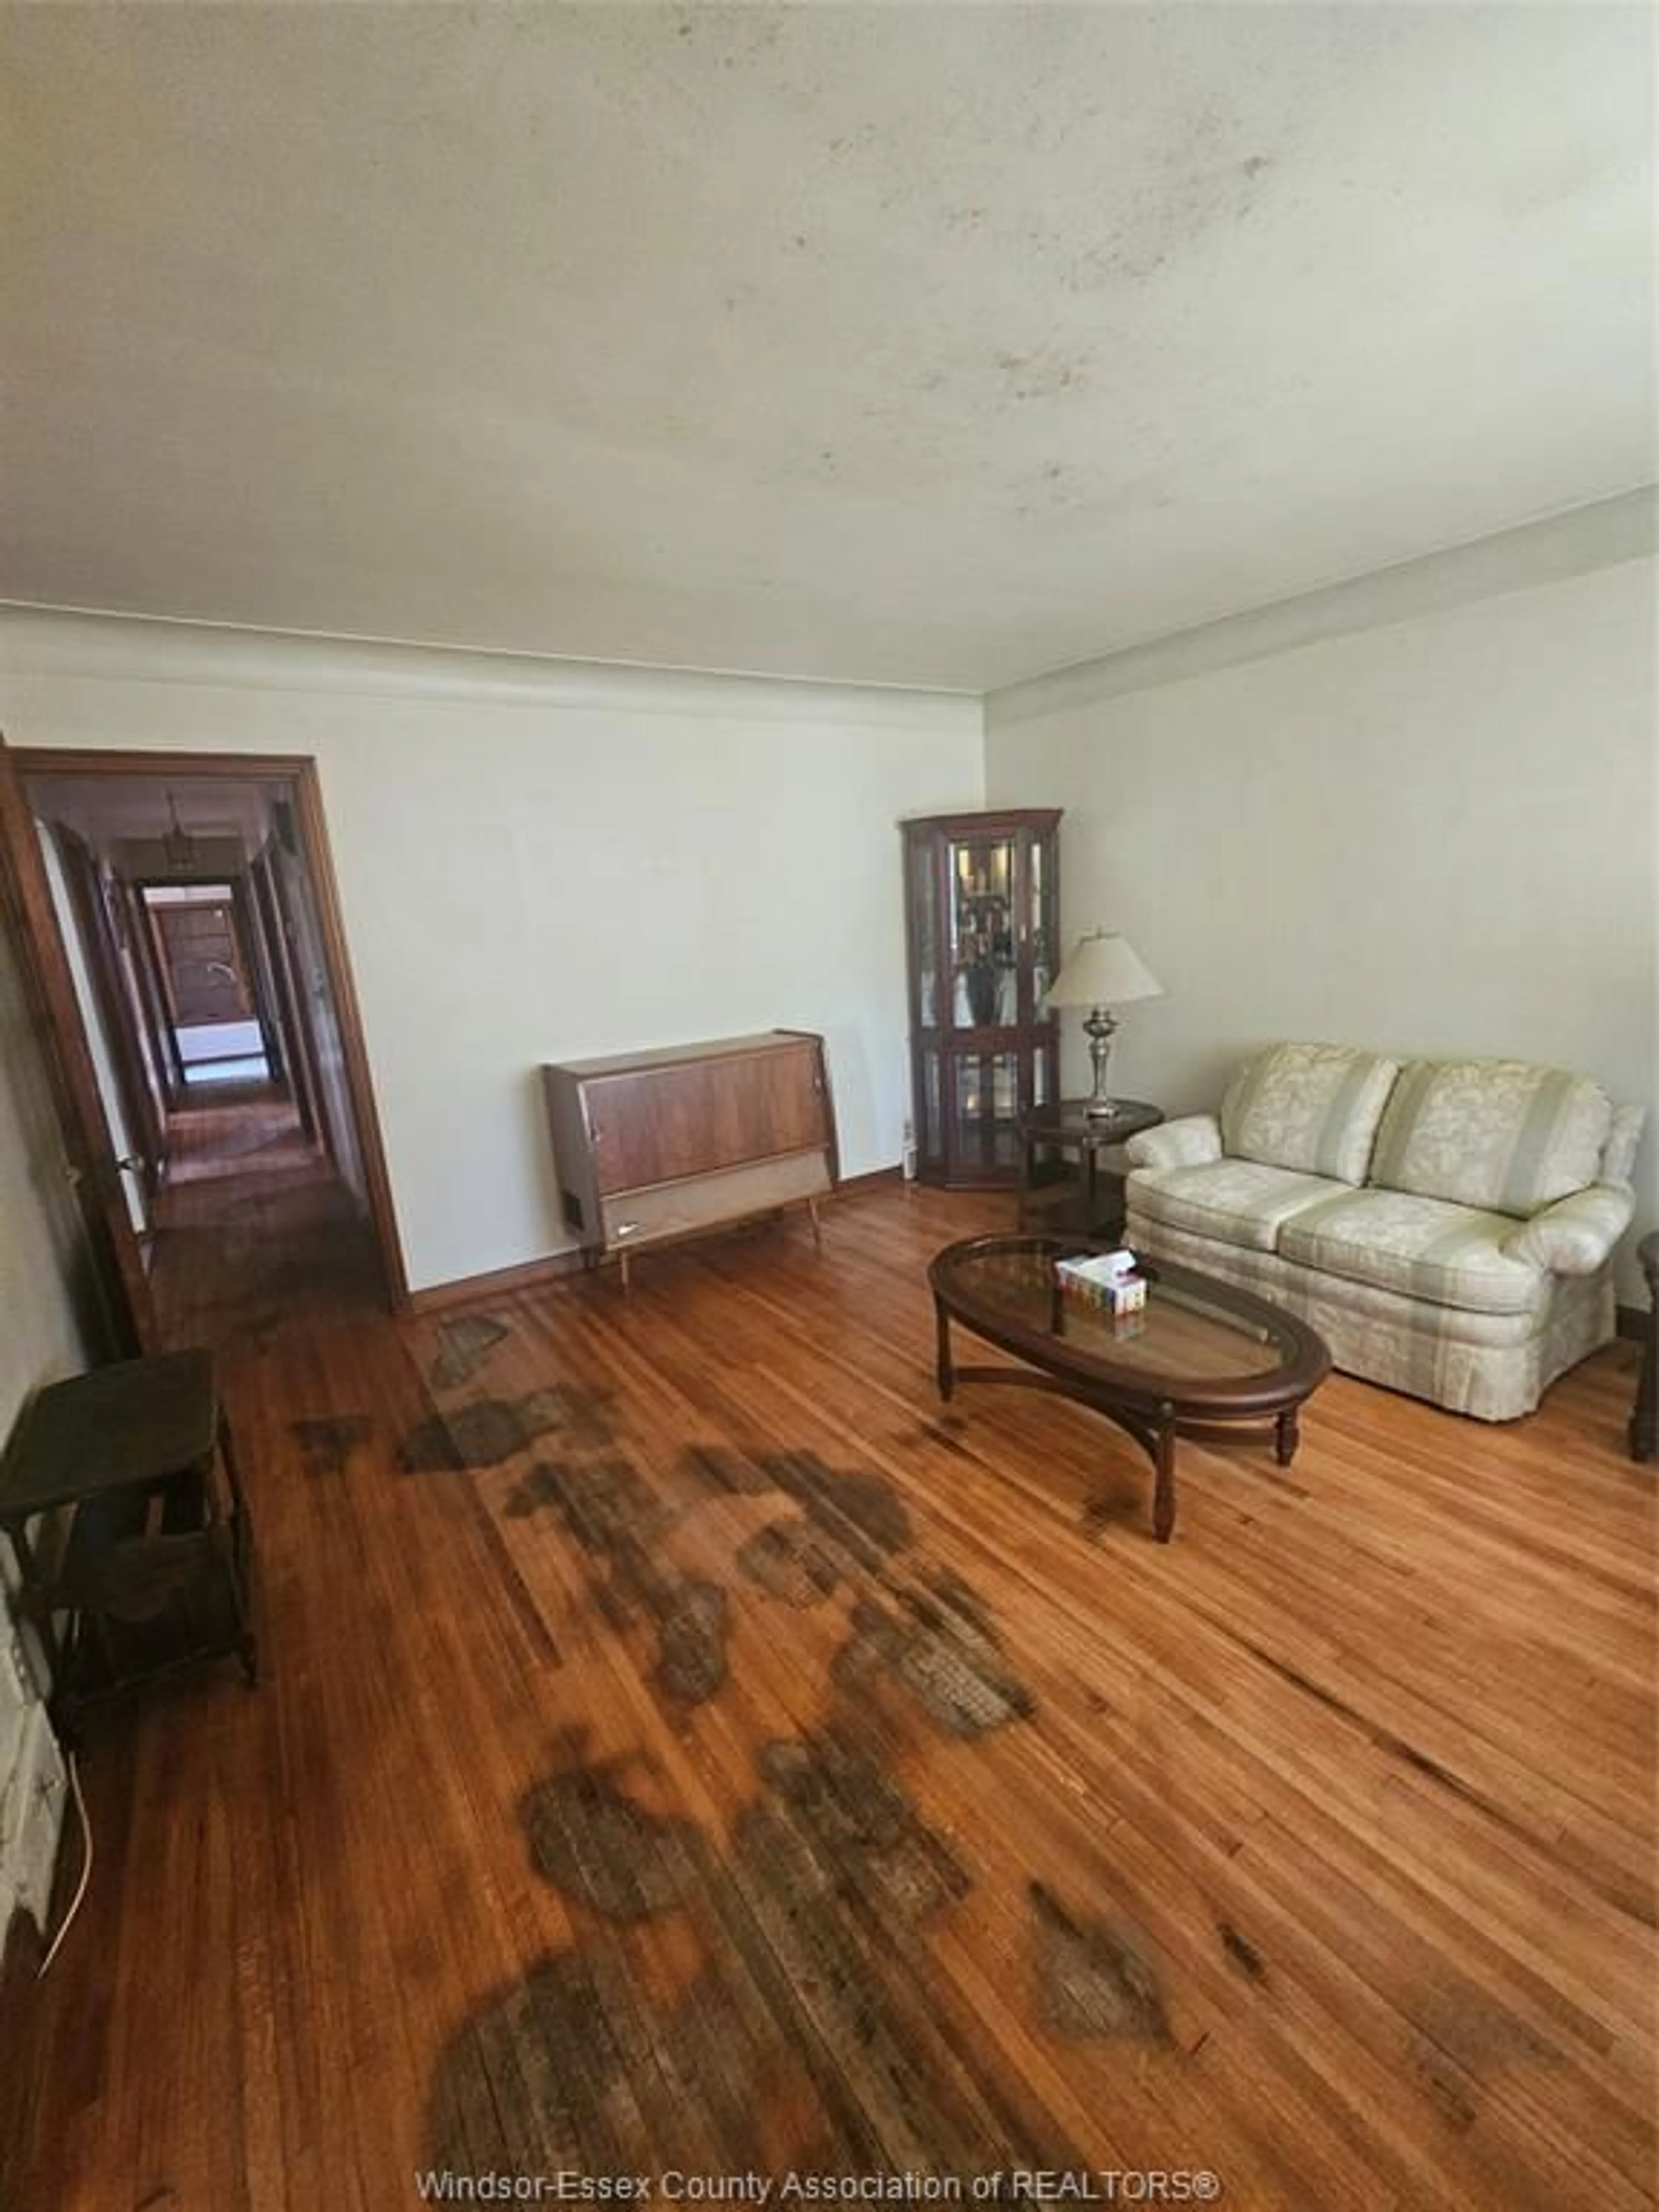 Living room for 1573 BENJAMIN, Windsor Ontario N8X 4N3